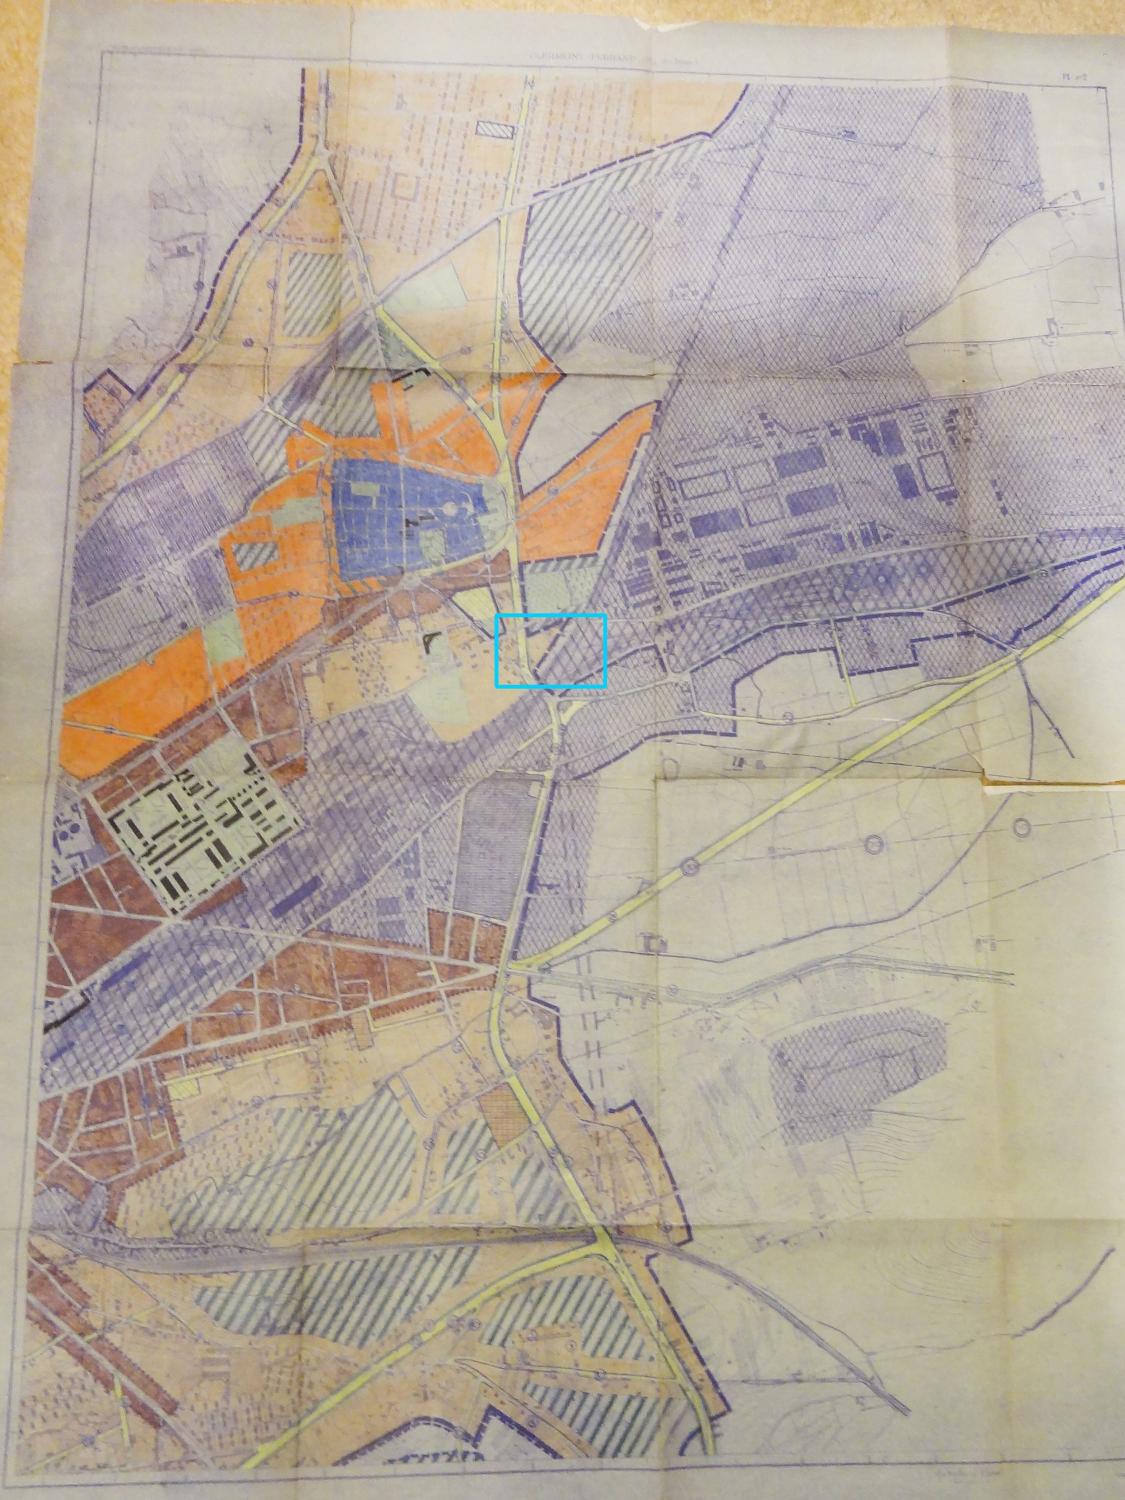 Extrait du Plan d'aménagement du Groupement d'urbanisme de Clermont-Ferrand, [1951-1952], [Roger Puget, urbaniste en chef]. Dans le rectangle bleu, en "secteur aéré de la zone de construction en ordre discontinu", se situe l'emplacement du centre d'apprentissage devenu lycée. Le boulevard Ambroise-Brugière, encore à l'état de projet, figure en jaune (AC Clermont-Ferrand. 896 W 1).